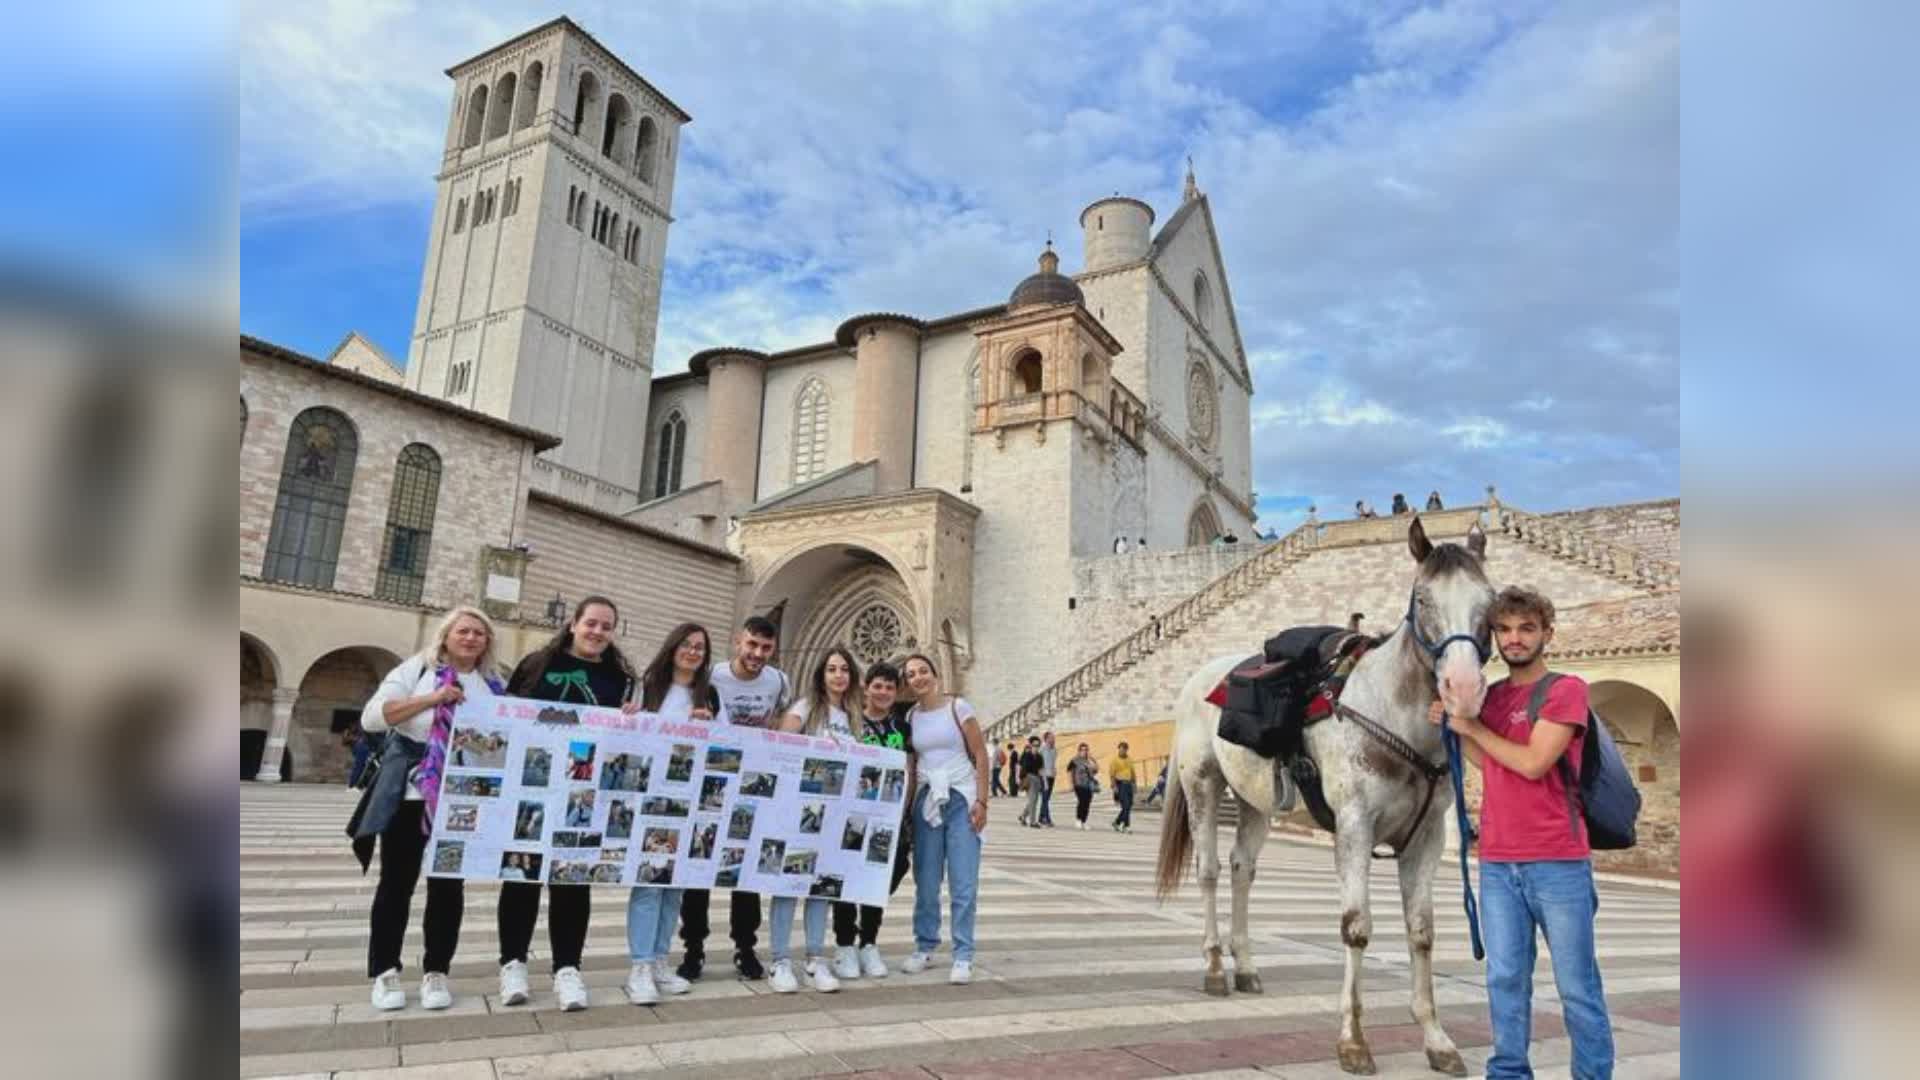 Arriva ad Assisi a piedi con il suo cavallo cieco: percorre 500 km